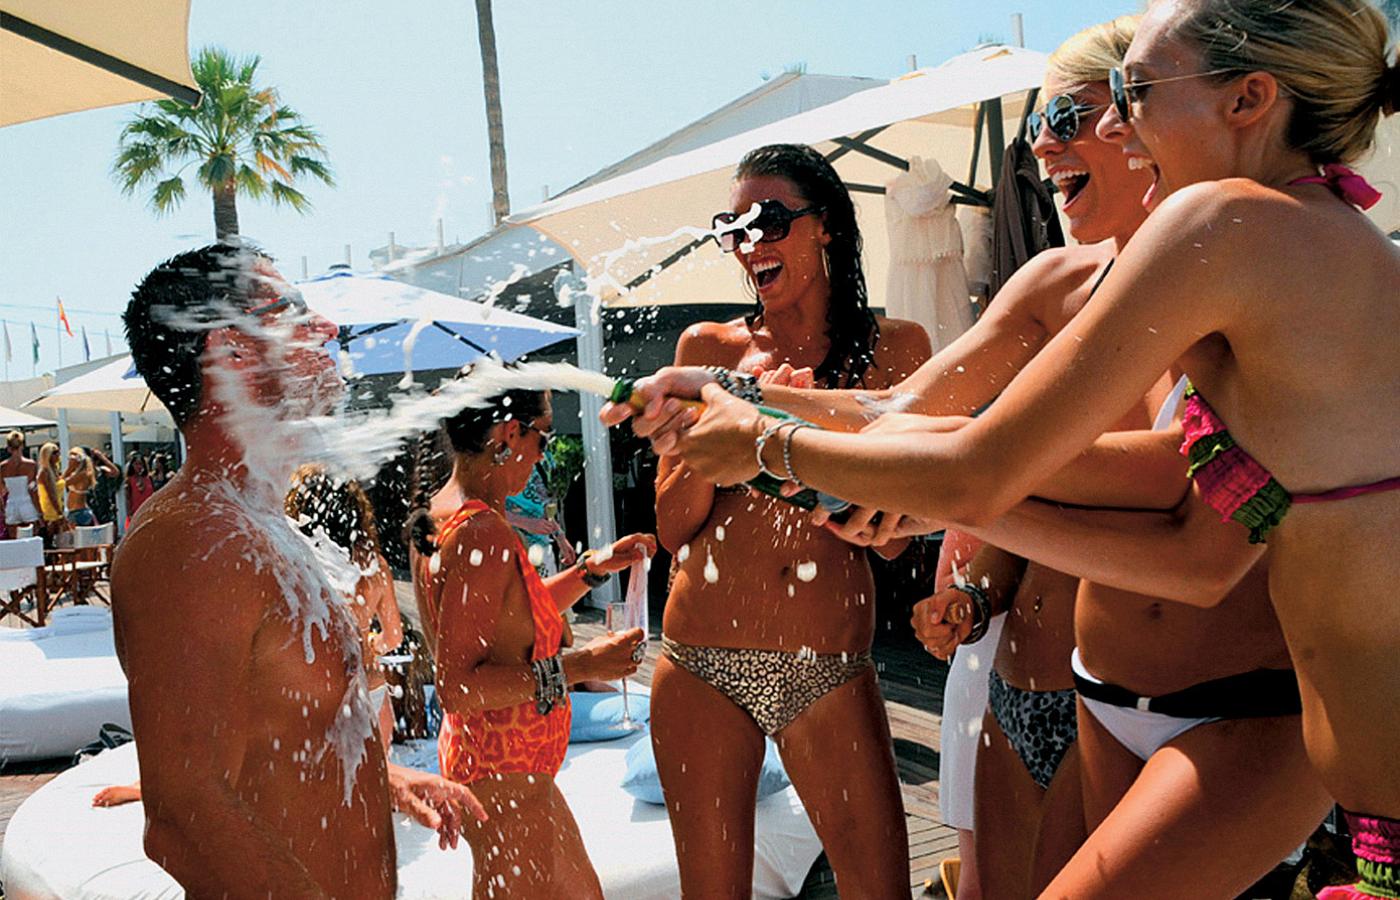 Bitwa szampanowa w klubie plażowym - wstęp 175 euro.